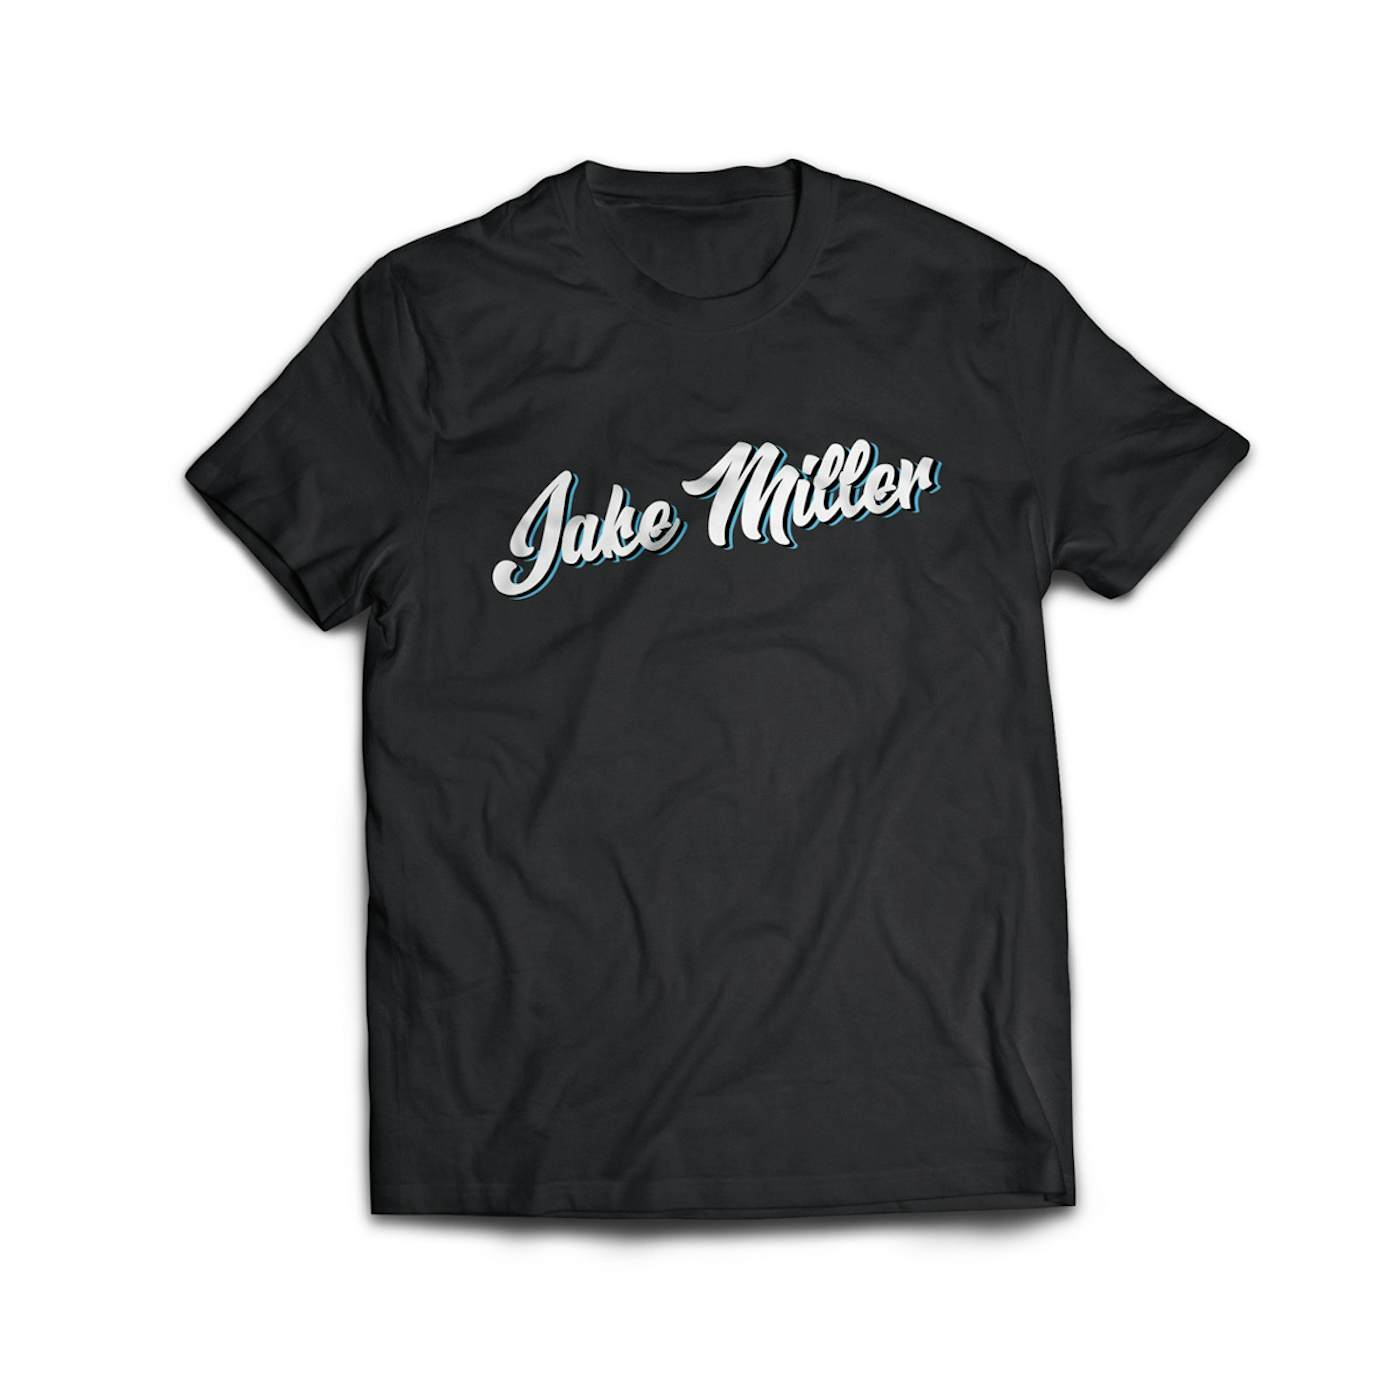 Jake Miller Miami Vice - Black T-Shirt